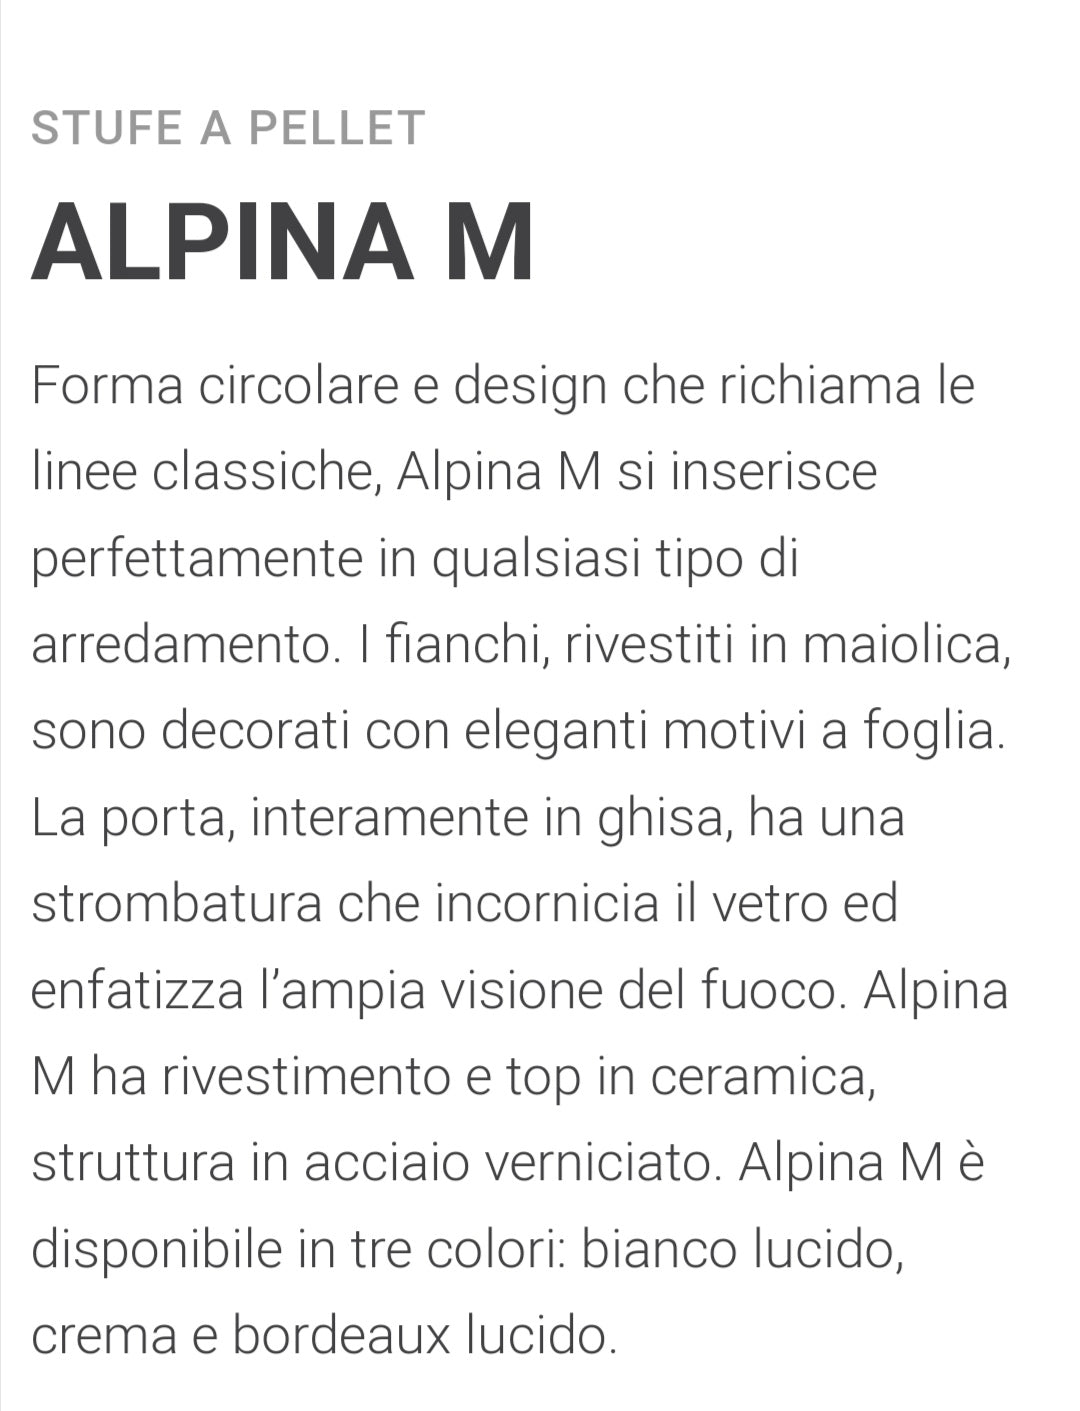 Alpina ML13V Ventilated Wood Stove White